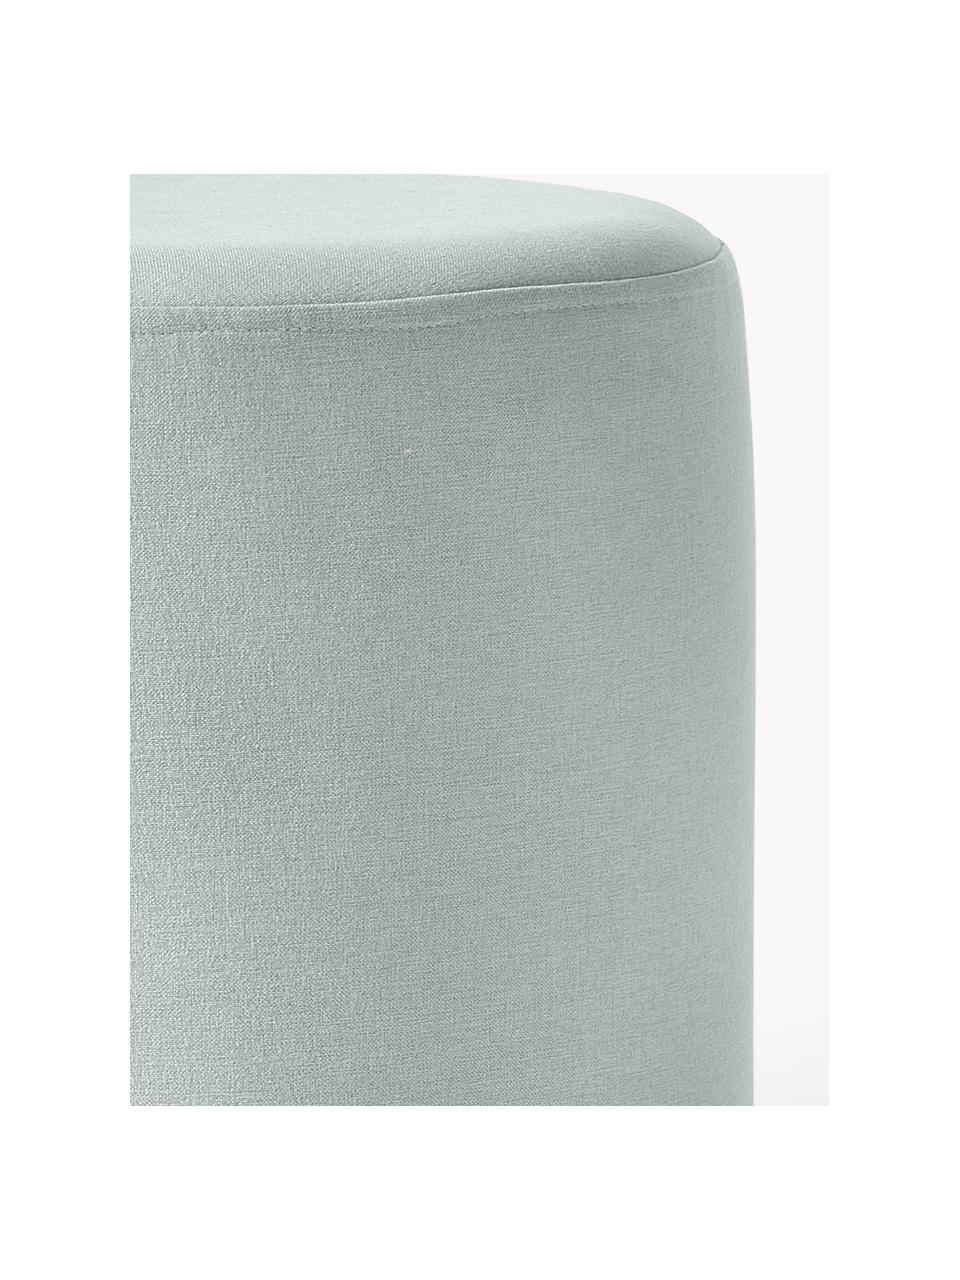 Kruk Daisy, Bekleding: 100% polyester De hoogwaa, Frame: multiplex, Geweven stof mintgroen, Ø 38 x H 45 cm